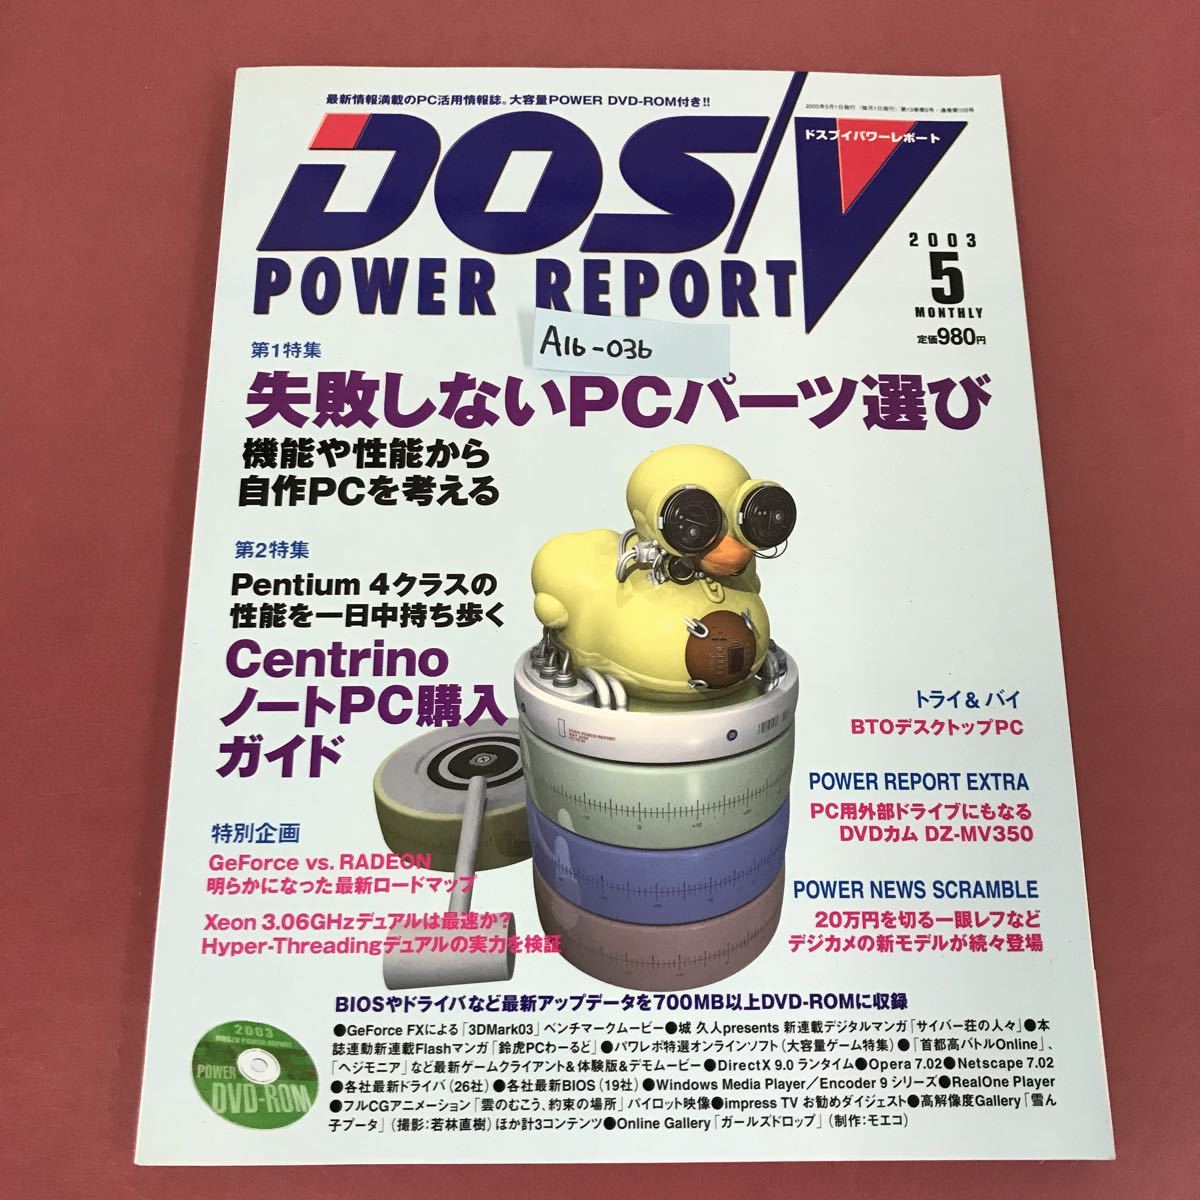 2022新春福袋】 POWER DOS/V A16-036 REPORT ドスブイパワーレポート